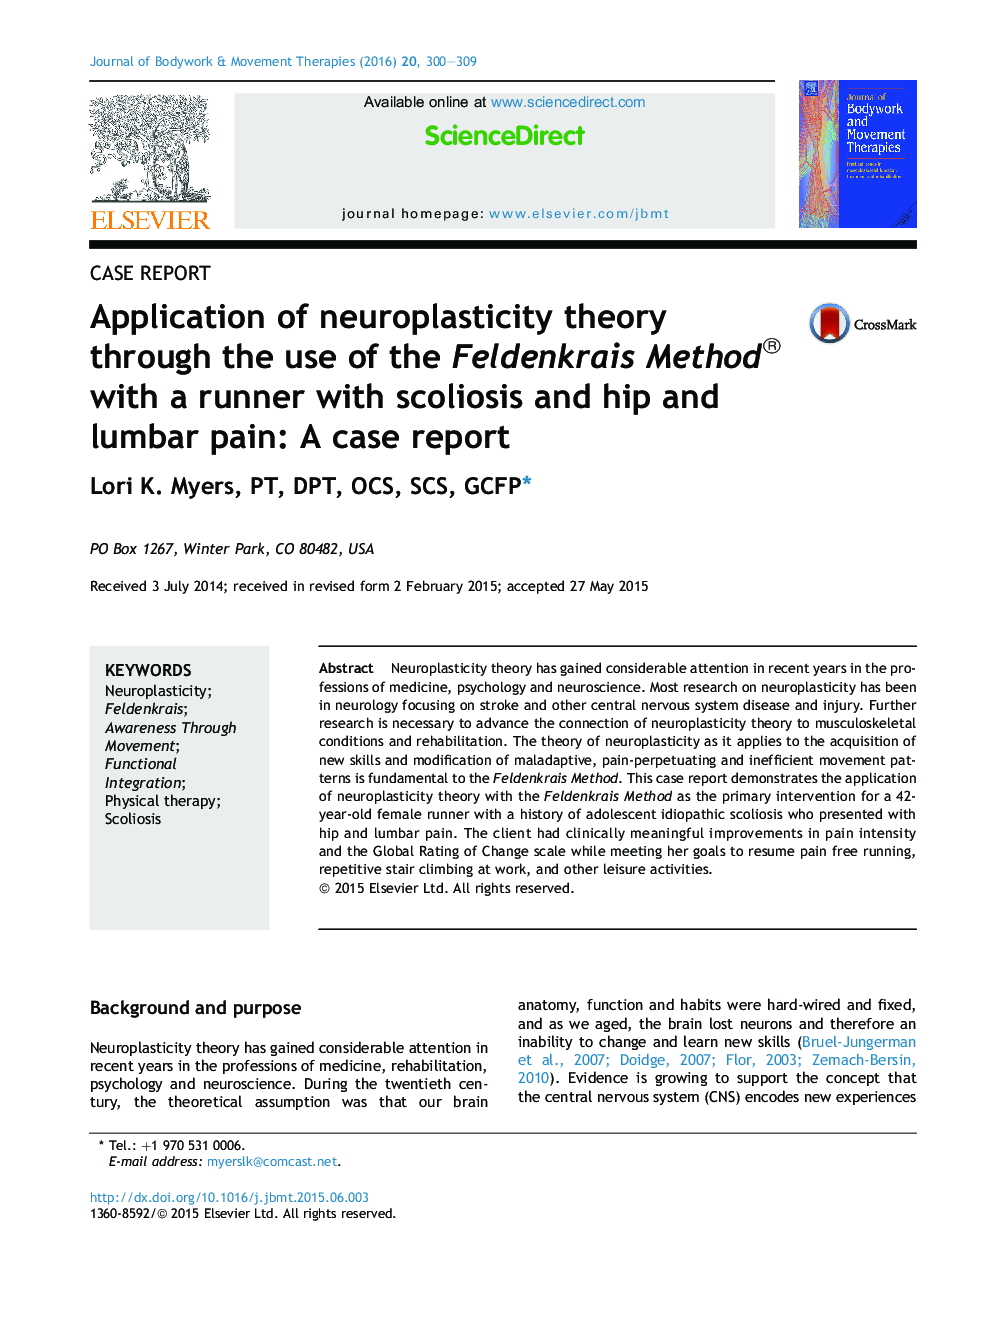 کاربرد نظریه انعطاف پذیری عصبی از طریق استفاده از متد Feldenkrais با یک دونده با بیماری اسکولیوز و درد لگن و کمر: گزارش یک مورد